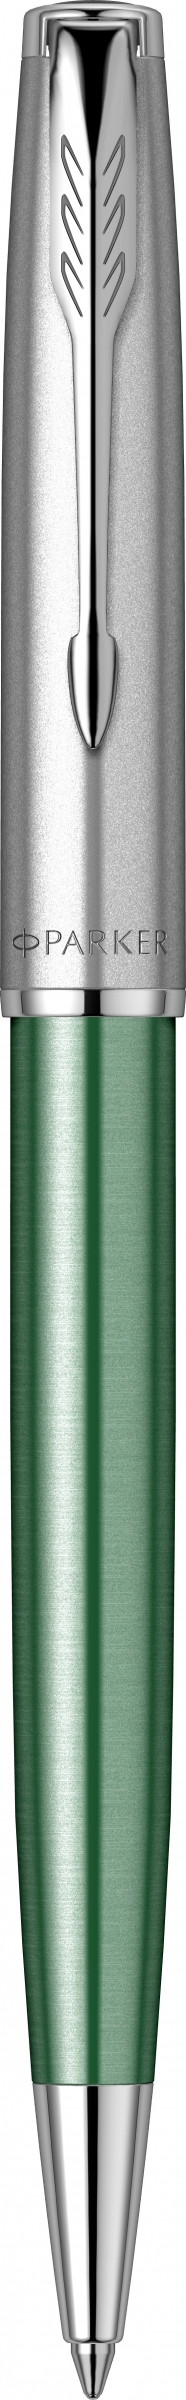 Ручка шариковая автомат Parker Sonnet Essentials Green SB Steel CT, черный, нержавеющая сталь, палладий, подарочная упаковка (2169365)